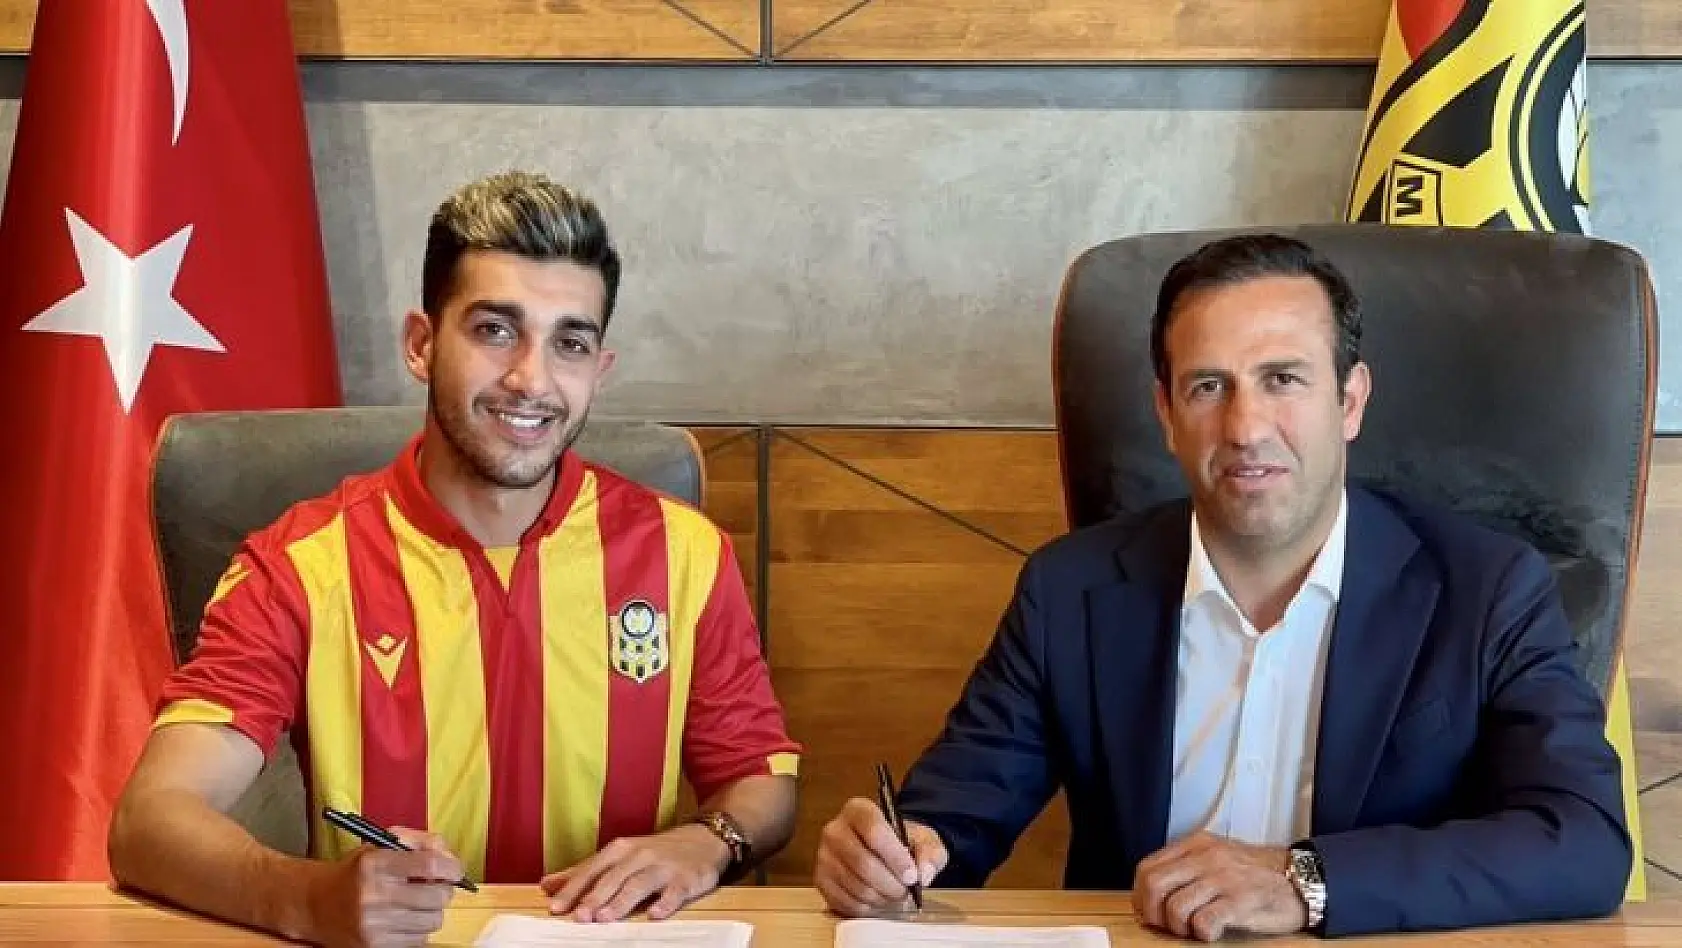 Yeni Malatyaspor, Taha Gür ile sözleşme imzaladı